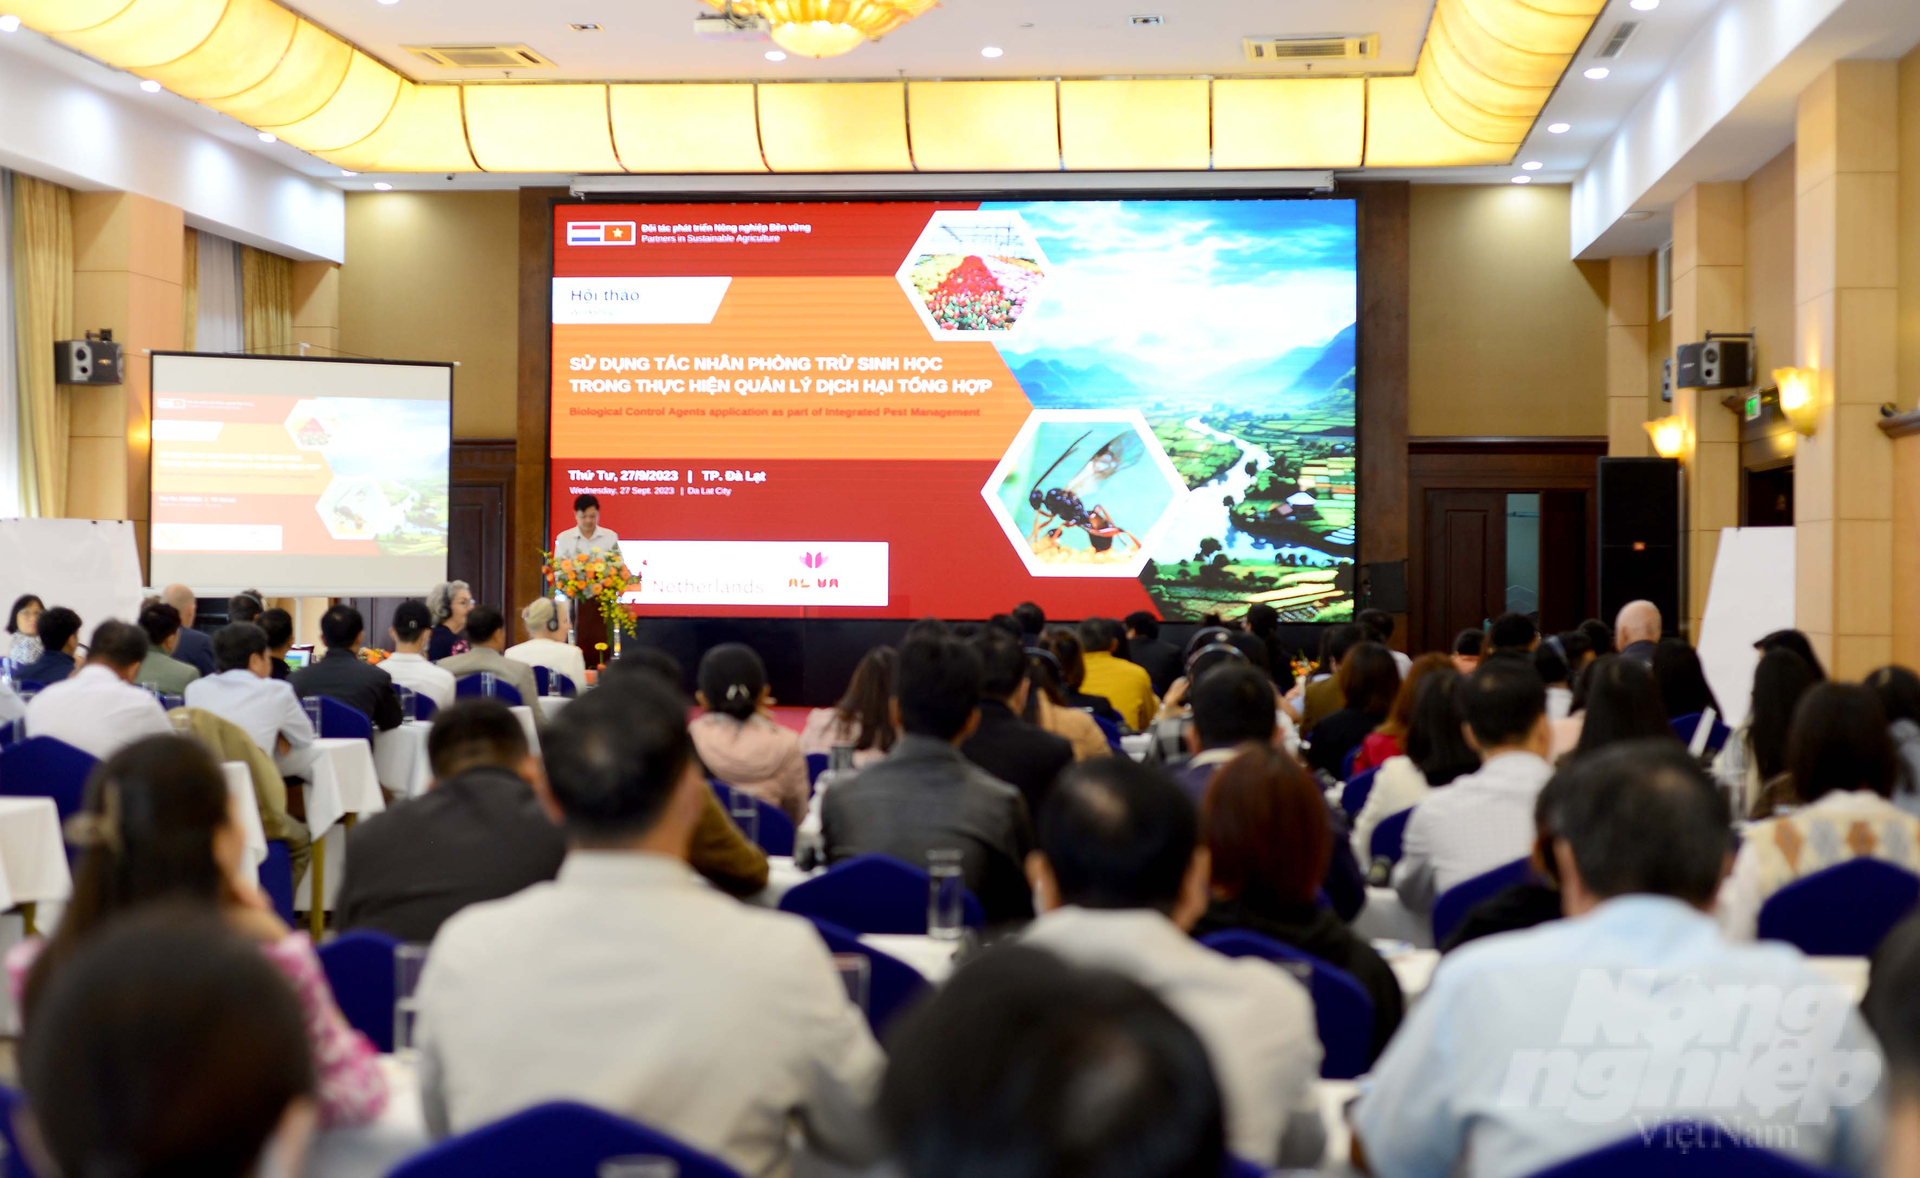 Hội thảo về sử dụng tác nhân phòng trừ sinh học trong quản lý dịch hại tổng hợp được tổ chức 27/9 tại TP Đà Lạt, Lâm Đồng. Ảnh: Minh Hậu.